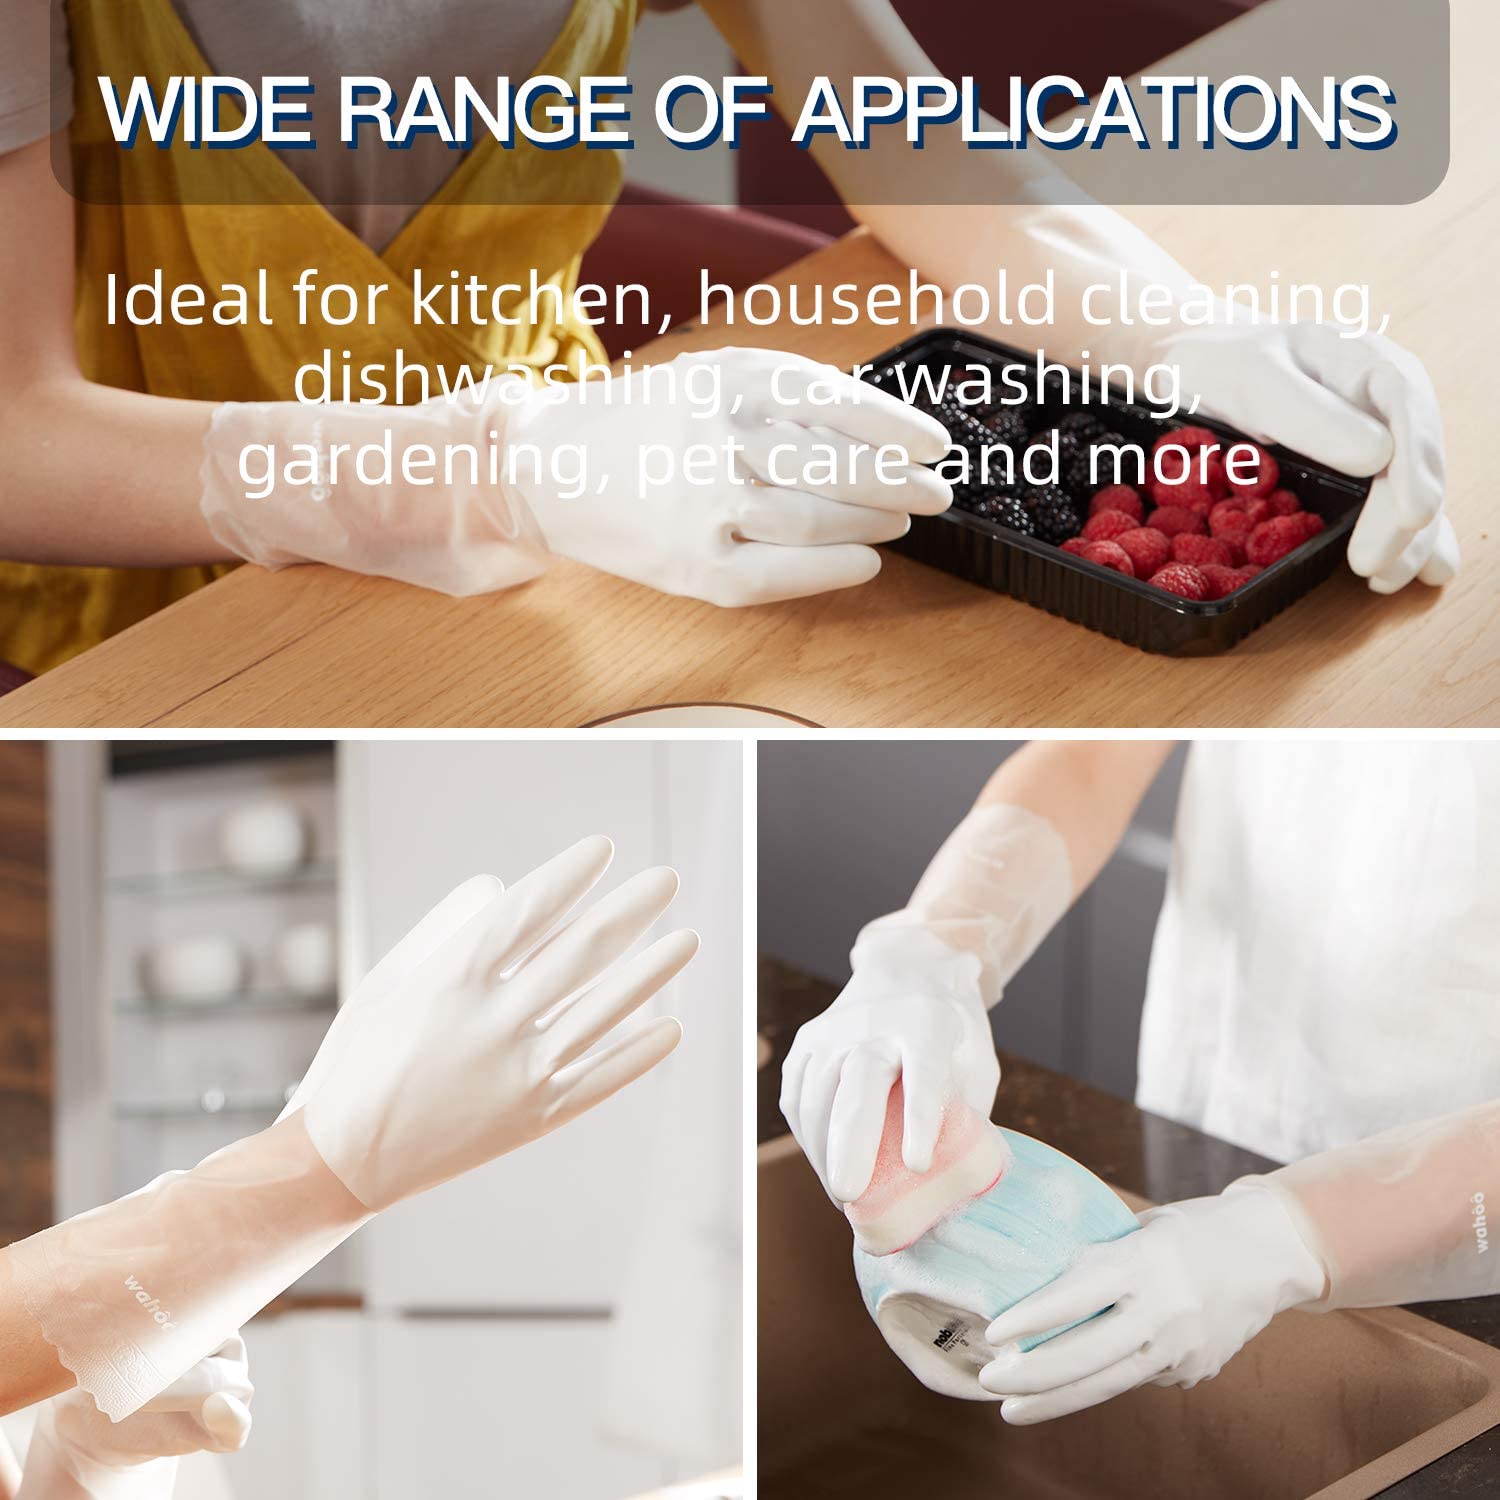 LANON 3 paires de gants de nettoyage en PVC de qualité supérieure